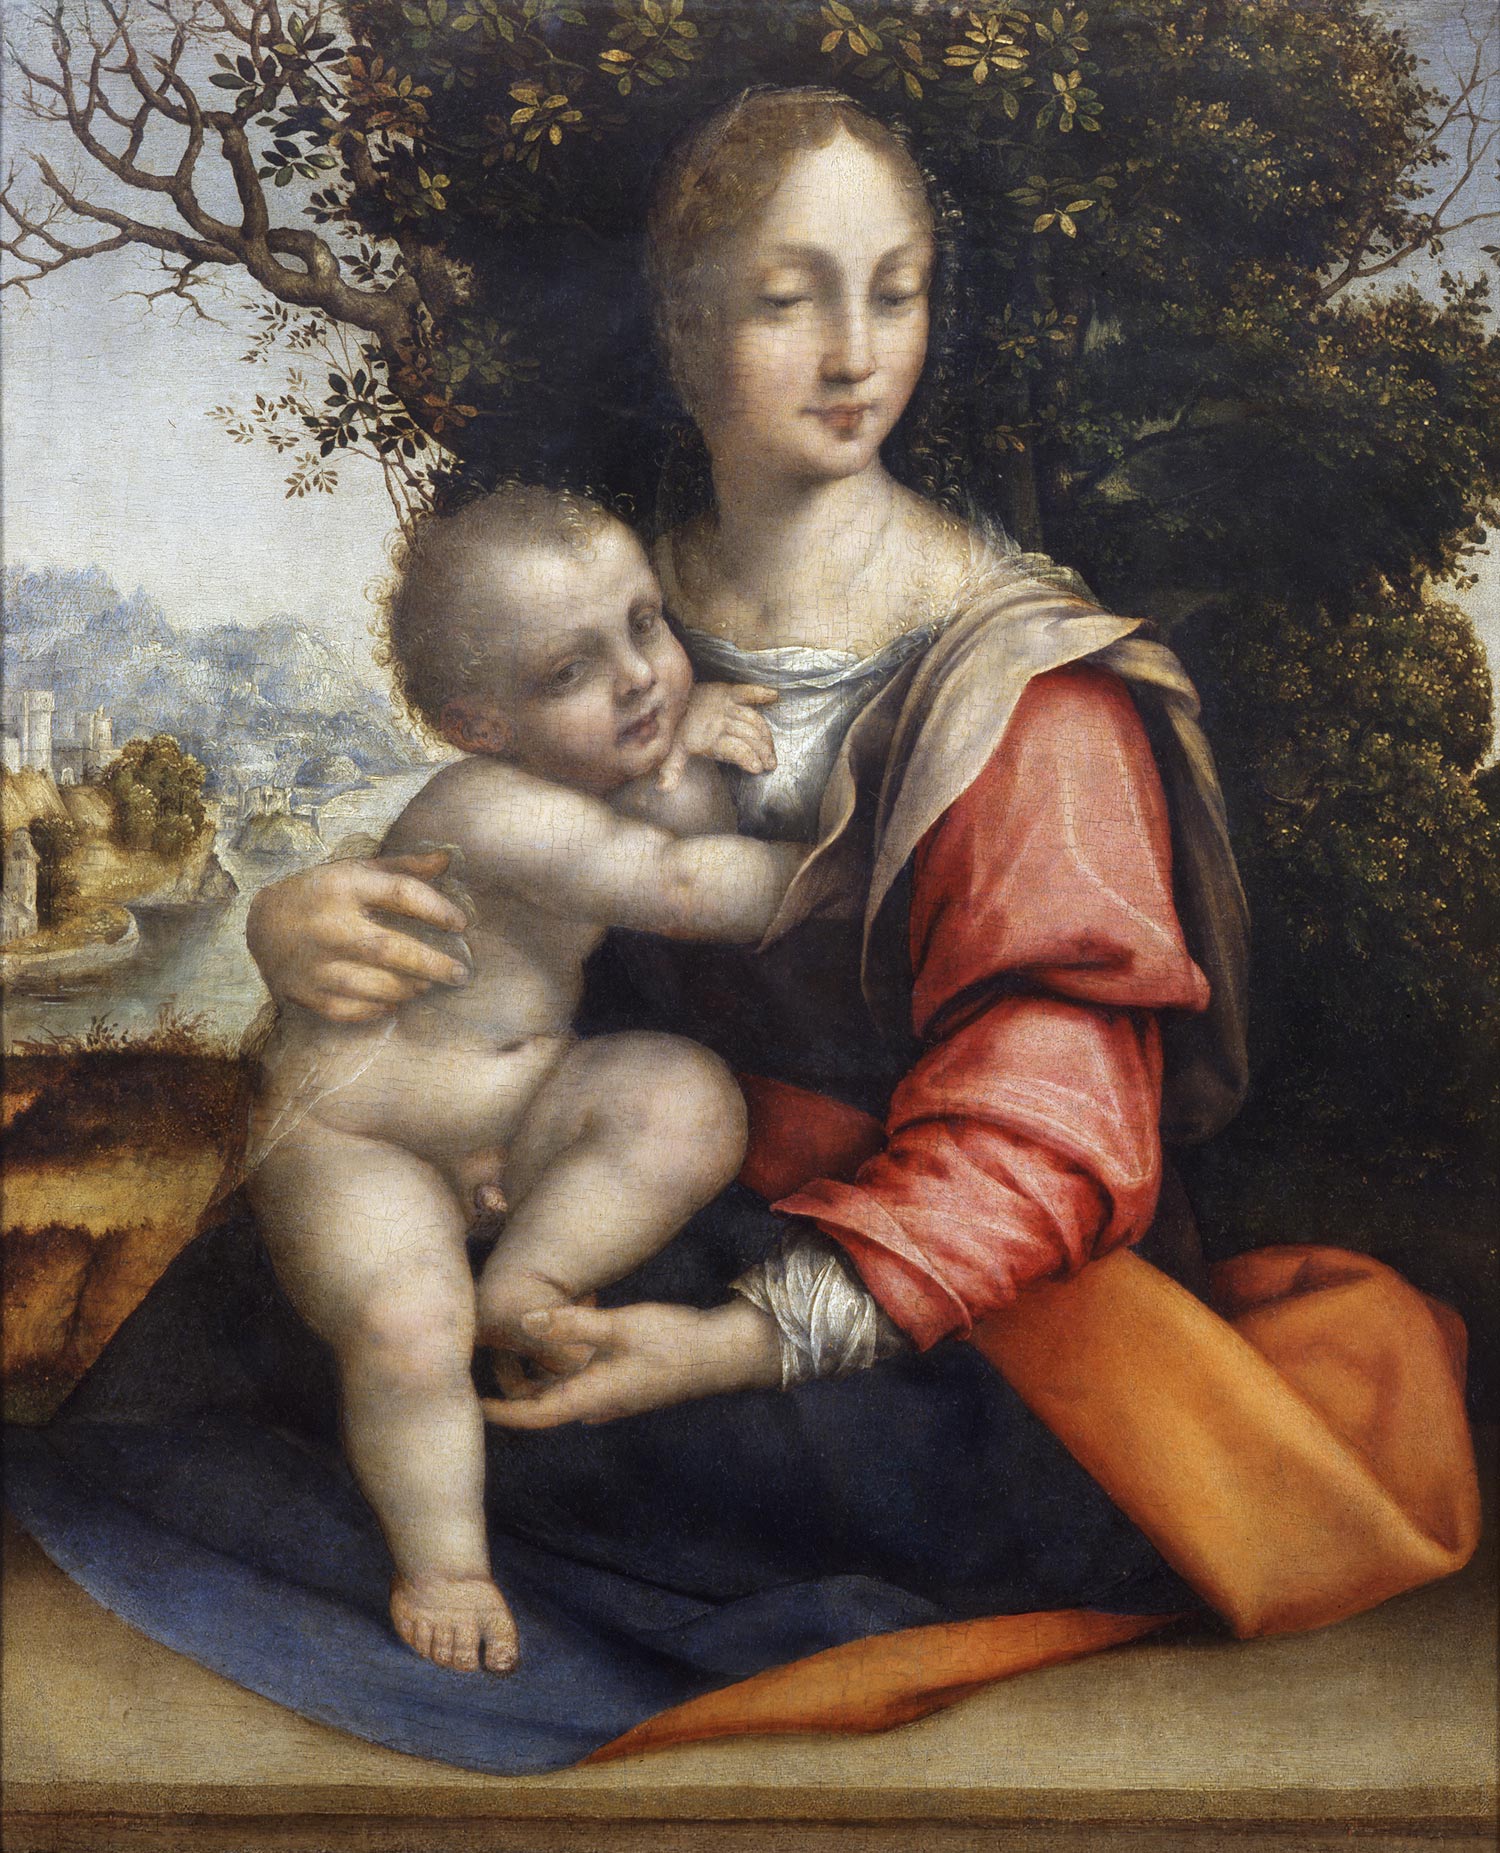 Cesare da Sesto, Madonna of the Tree (1512-1520; oil on panel, 46 x 36 cm; Milan, Pinacoteca di Brera, inv. 326)